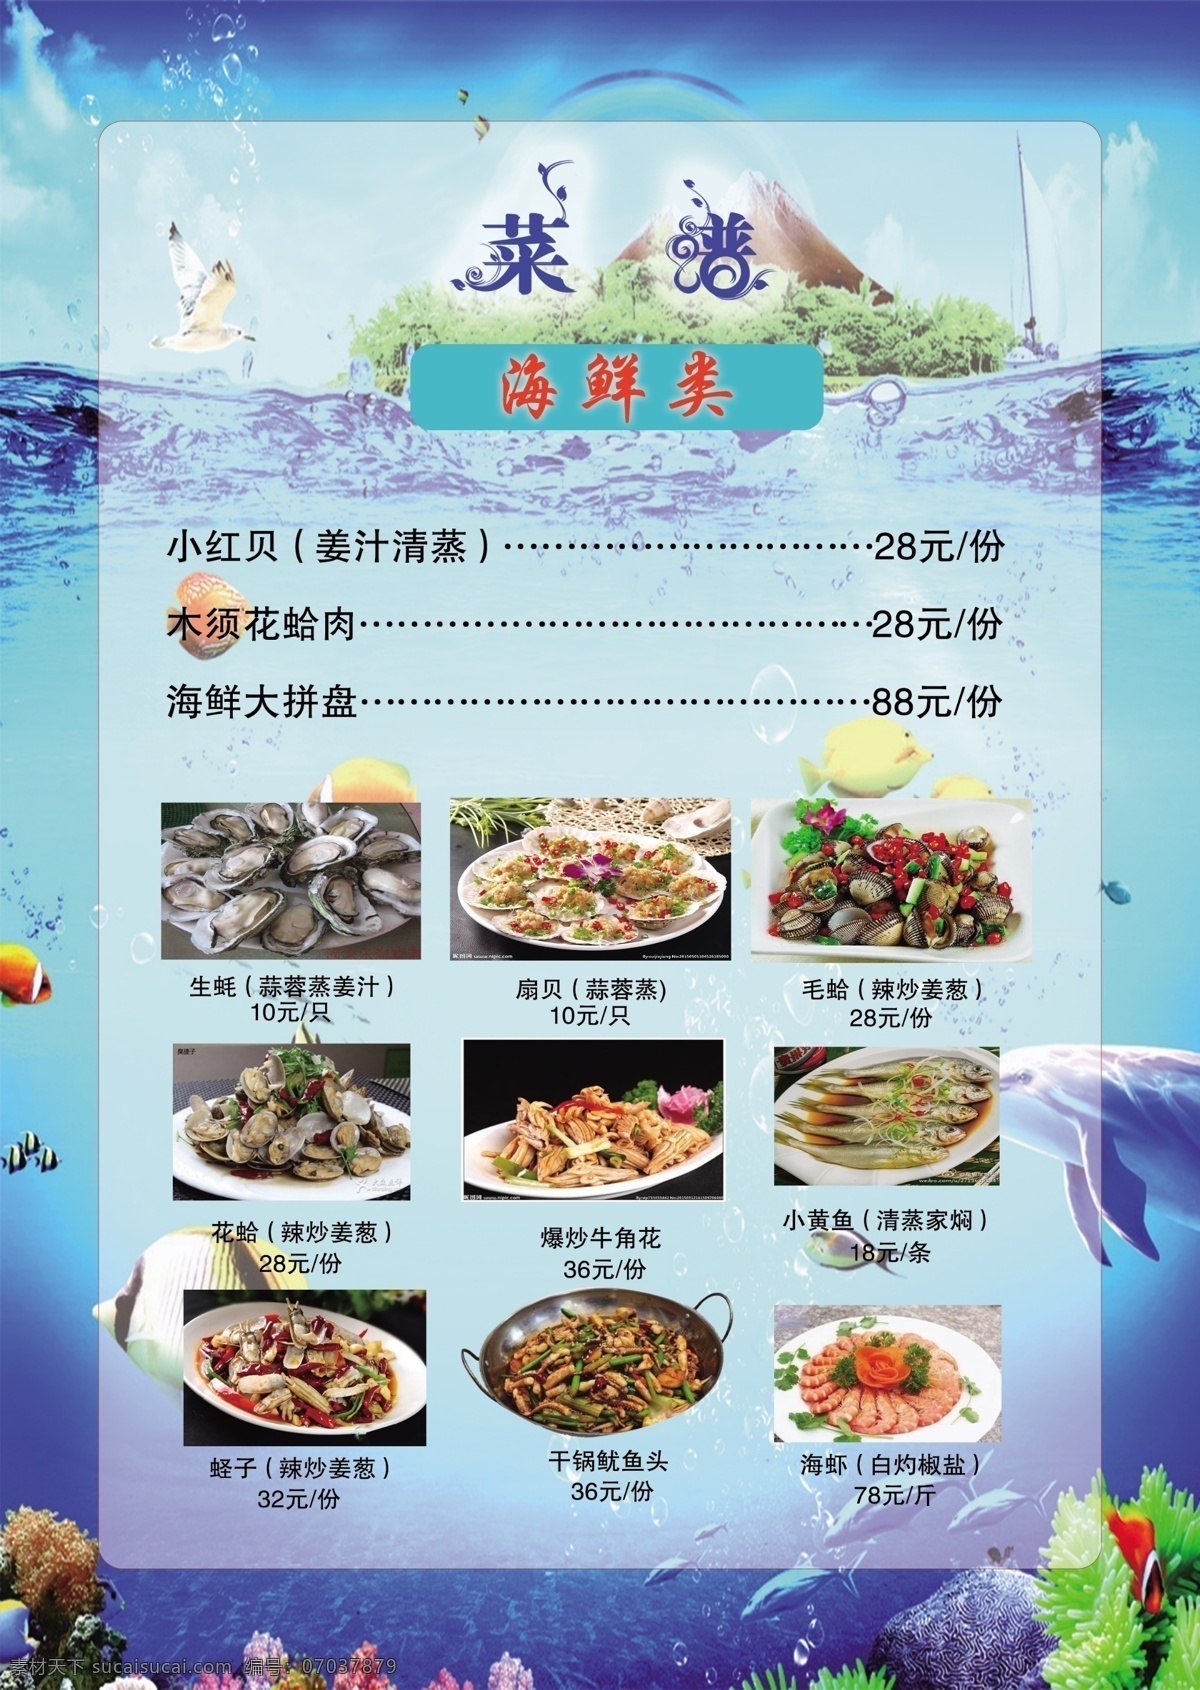 海鲜 类 菜单 ab 青色北景 菜普 海鲜类图案 海报